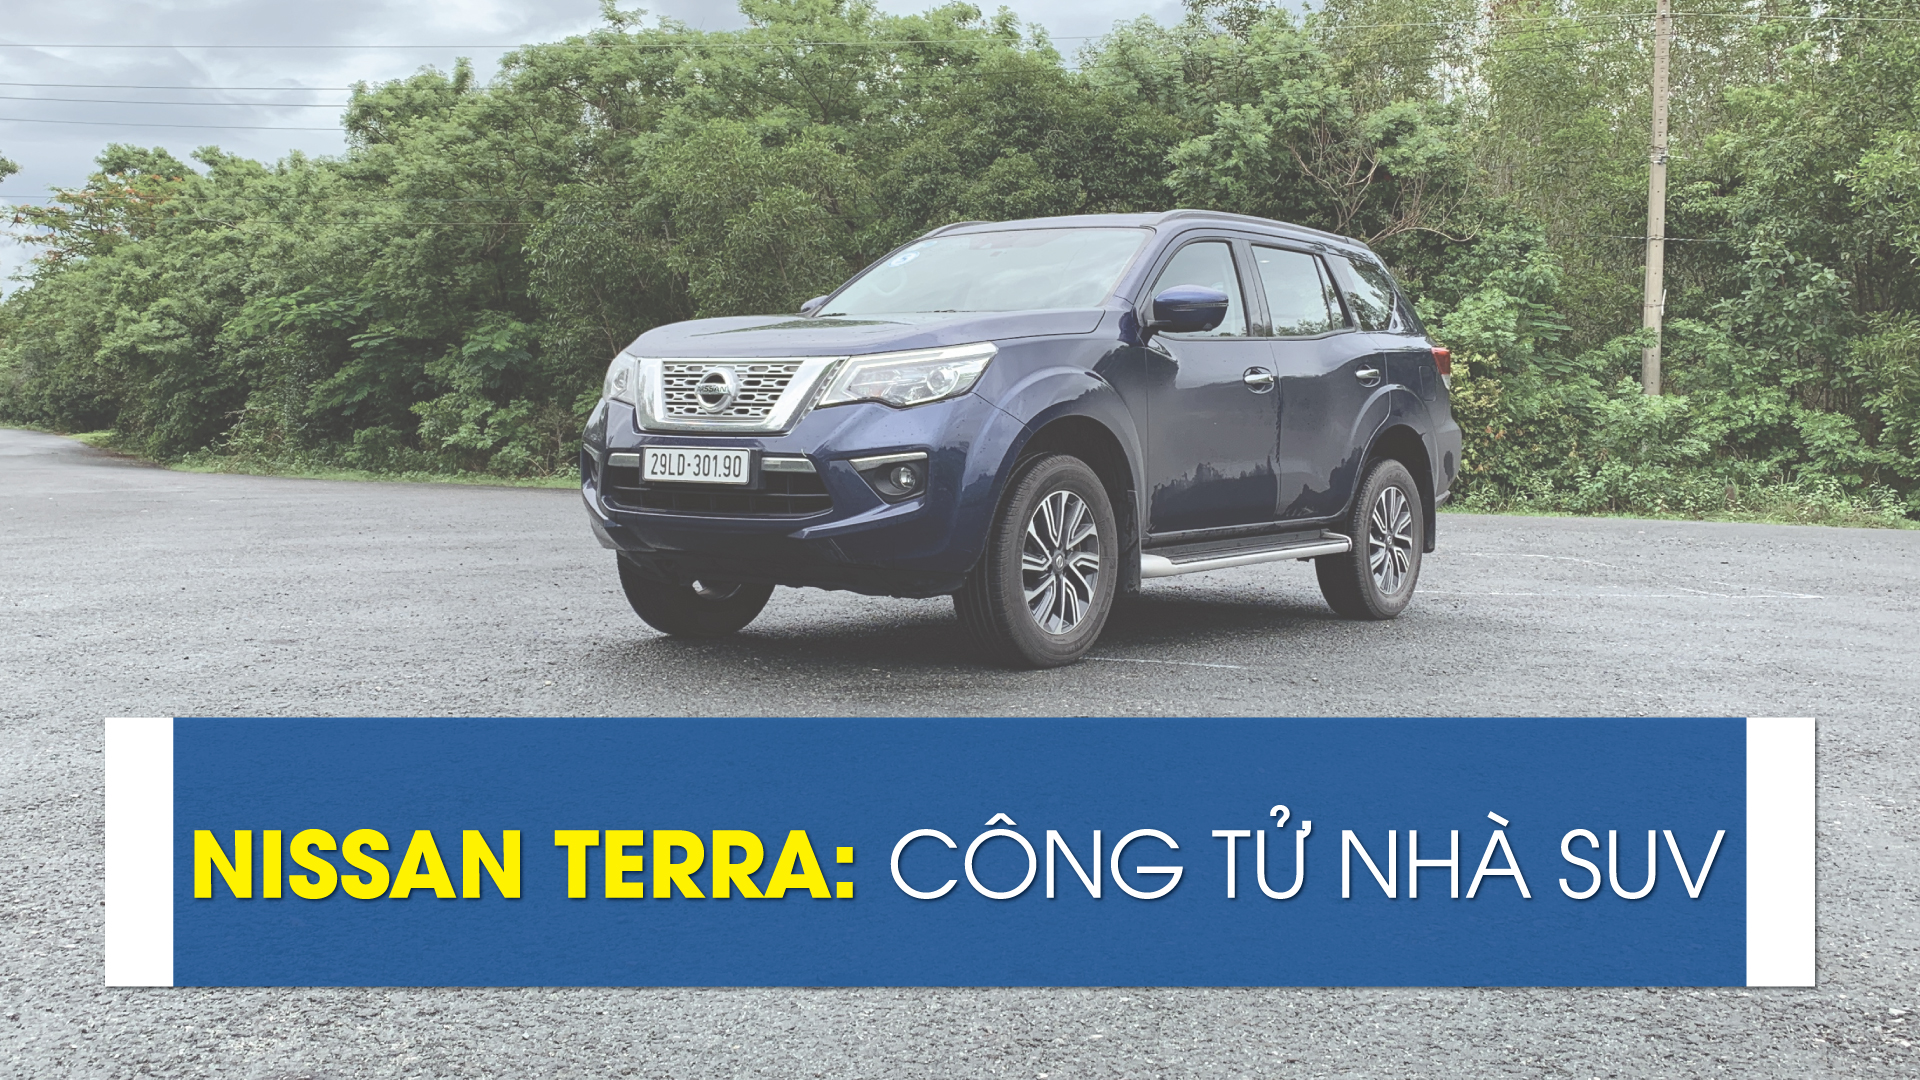 Nissan Terra: Công tử nhà SUV